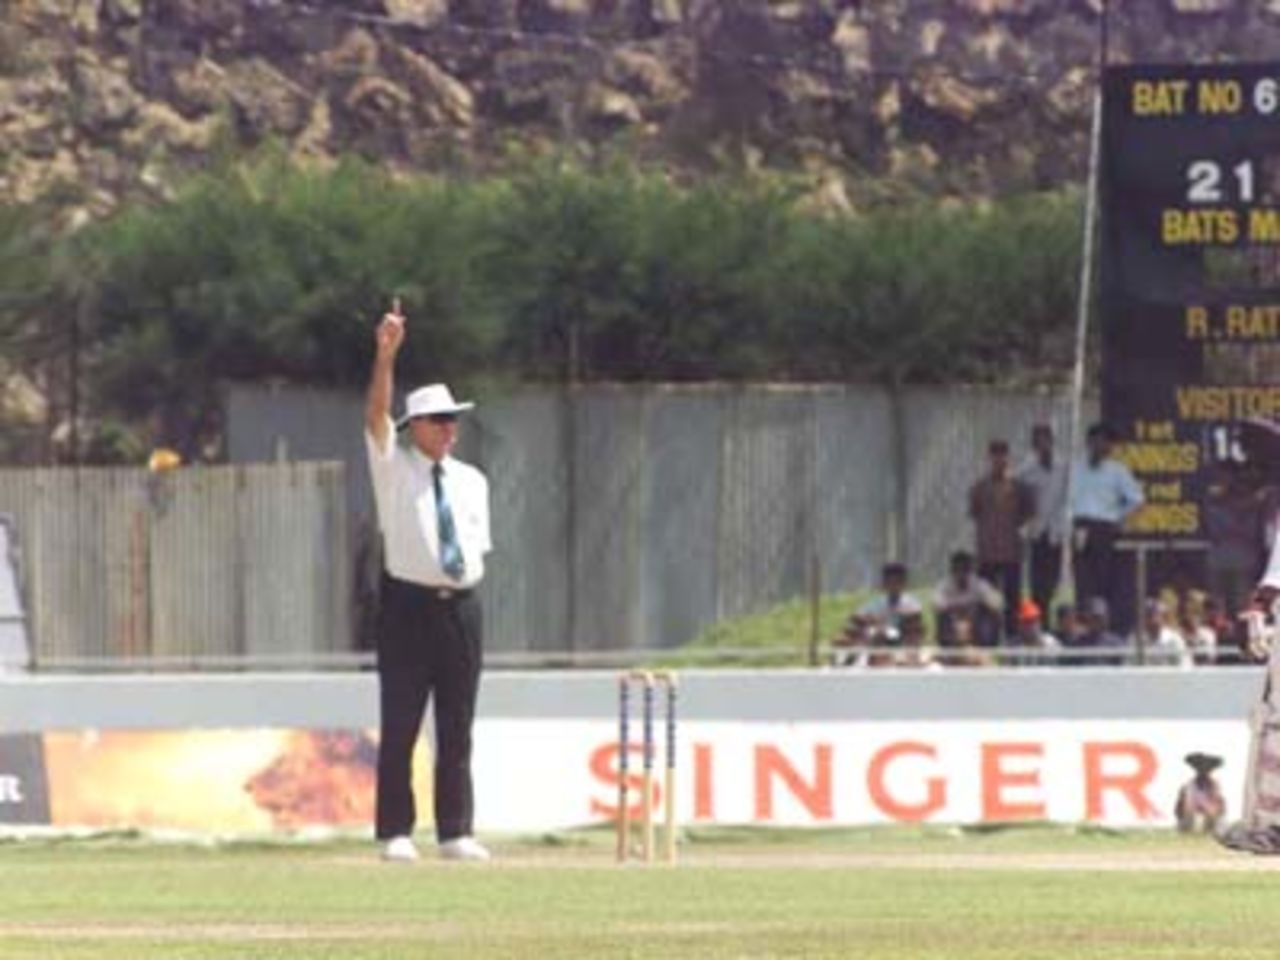 Russel Tiffen gives out Mahela Jayawardena, Pakistan v Sri Lanka, 2nd Test at Galle, 21-25 June 2000